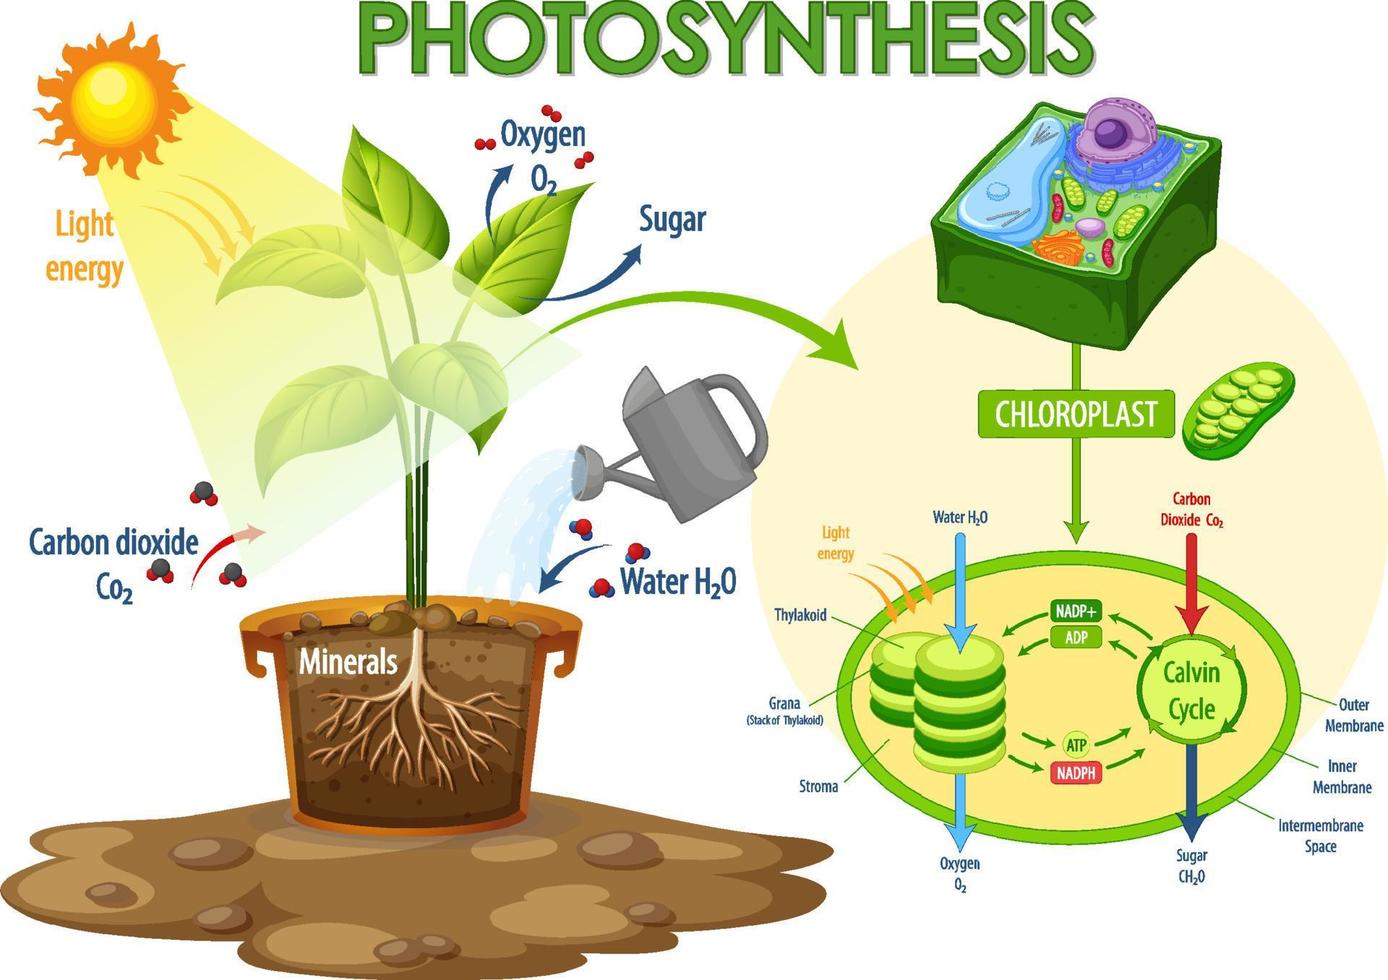 diagram som visar processen för fotosyntes i anläggningen vektor